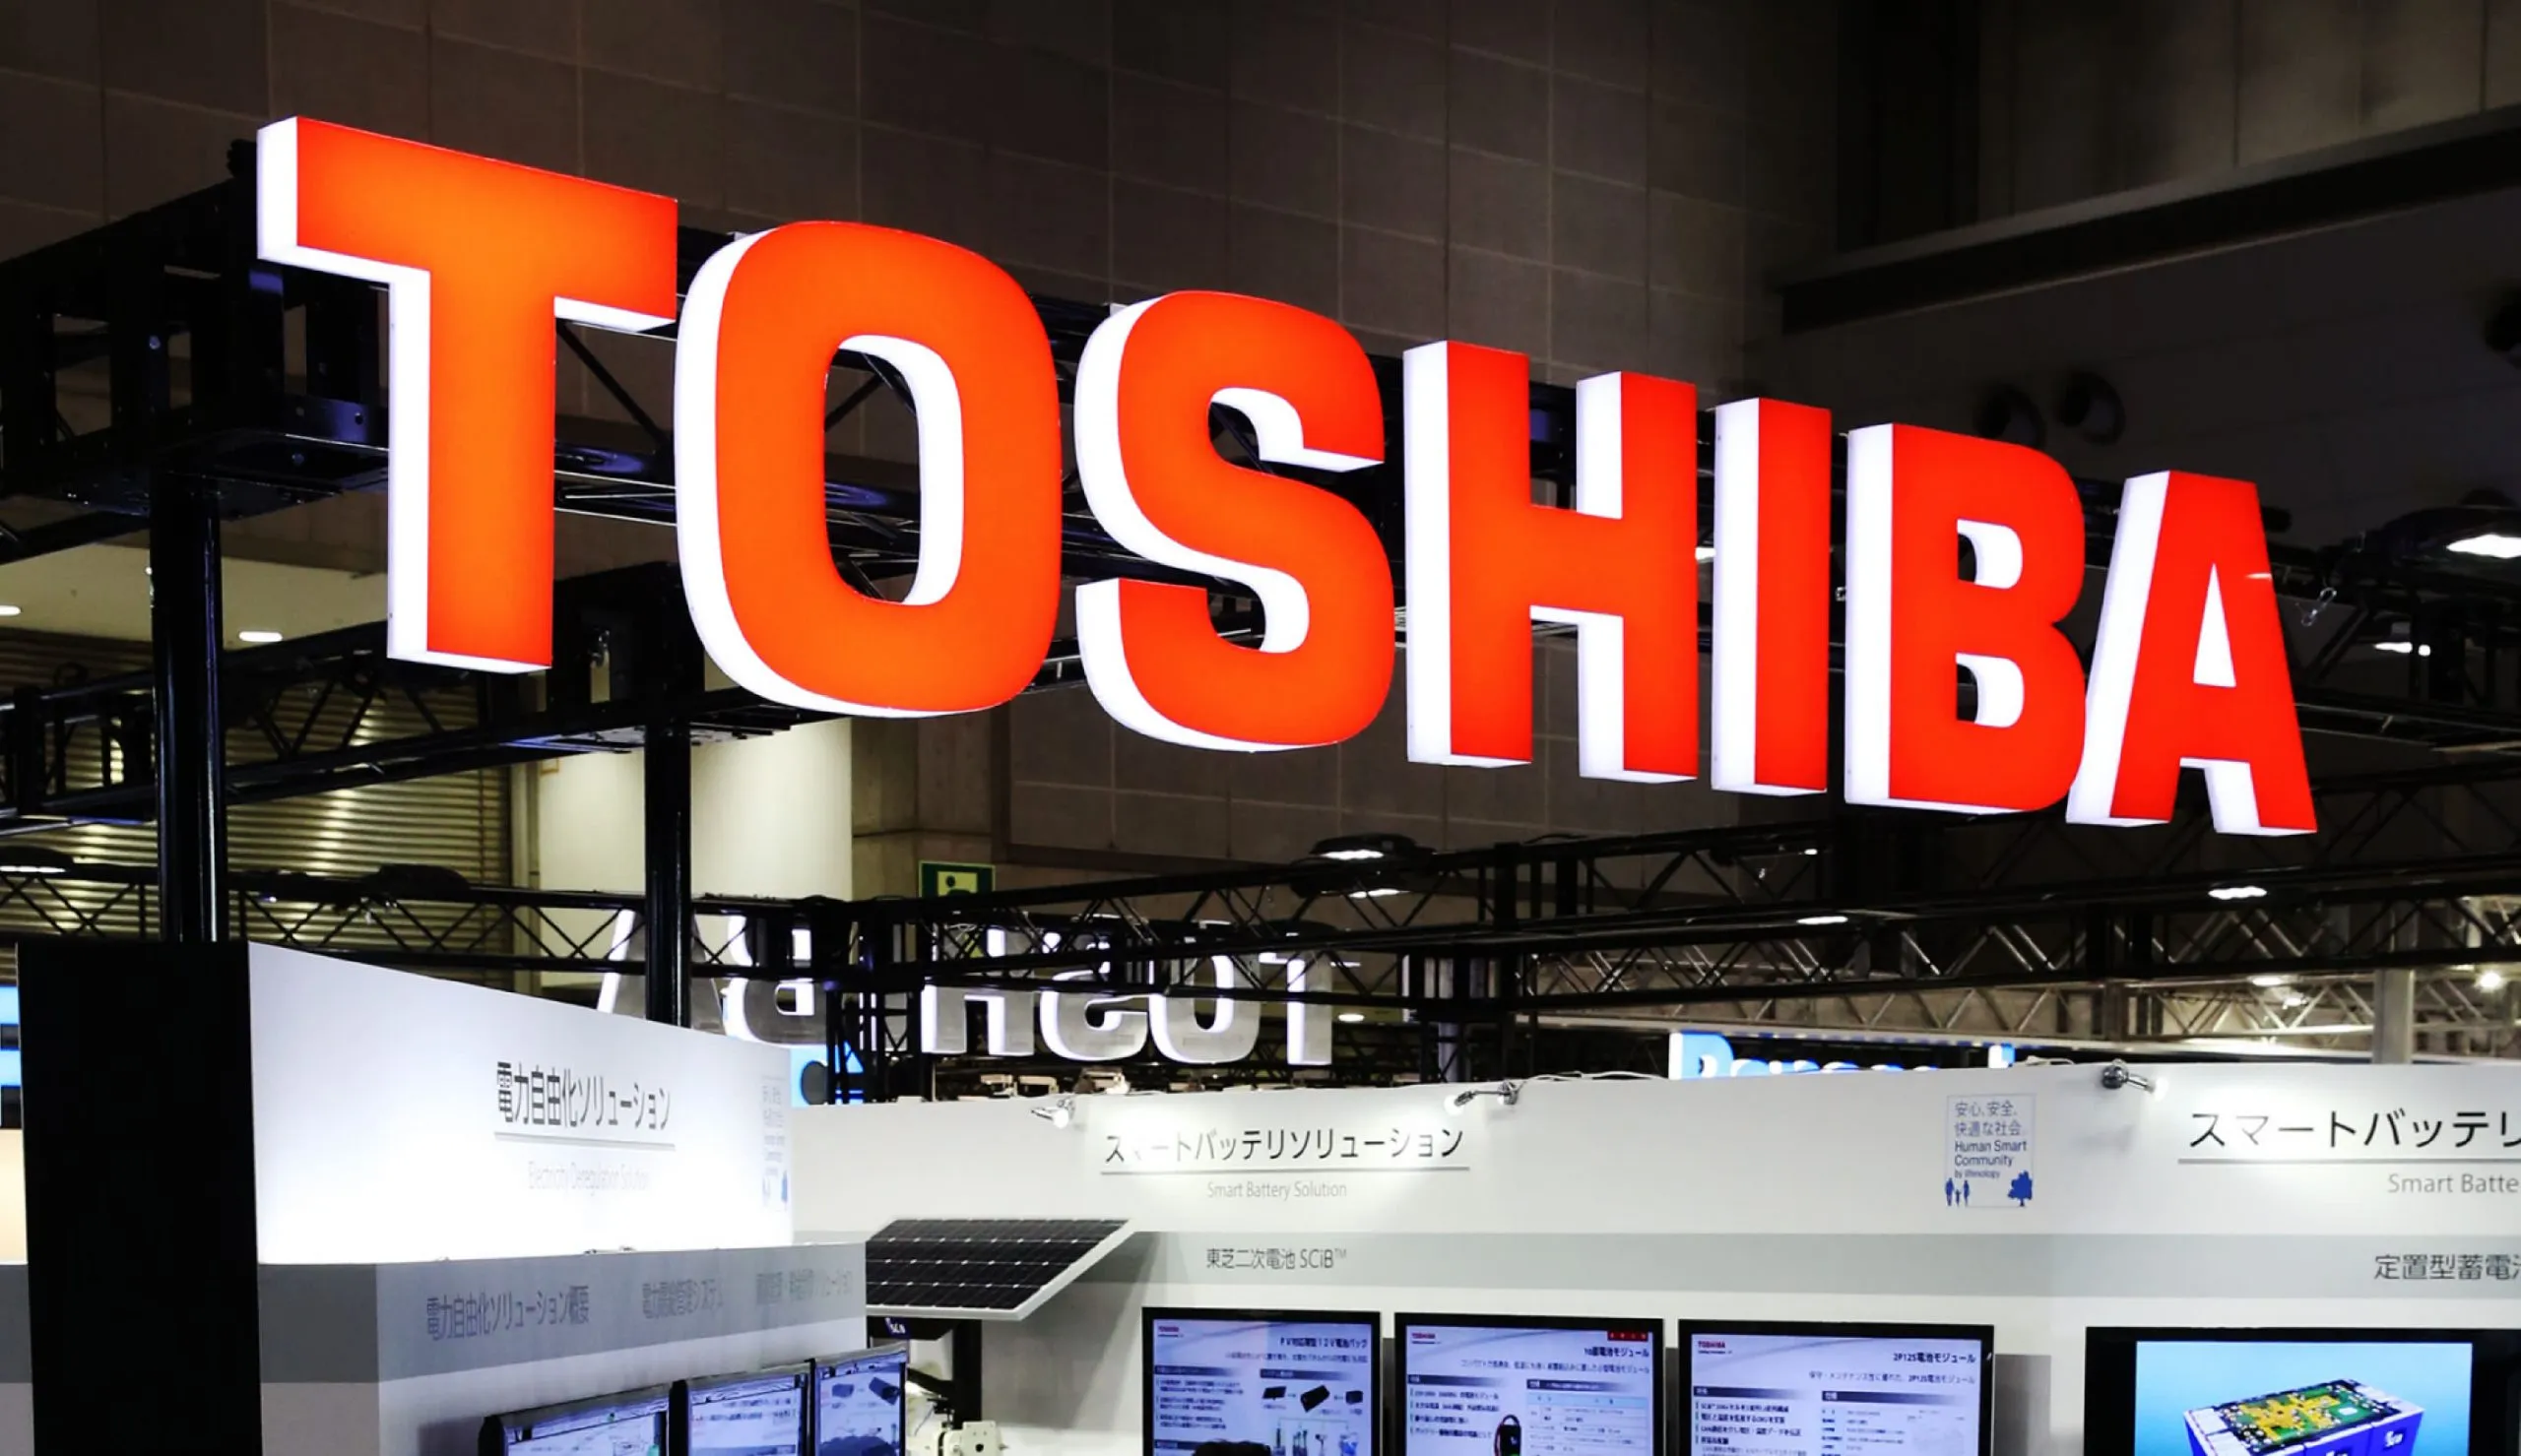 Japon elektronik devi Toshiba borsadan çıkmaya hazırlanıyor!